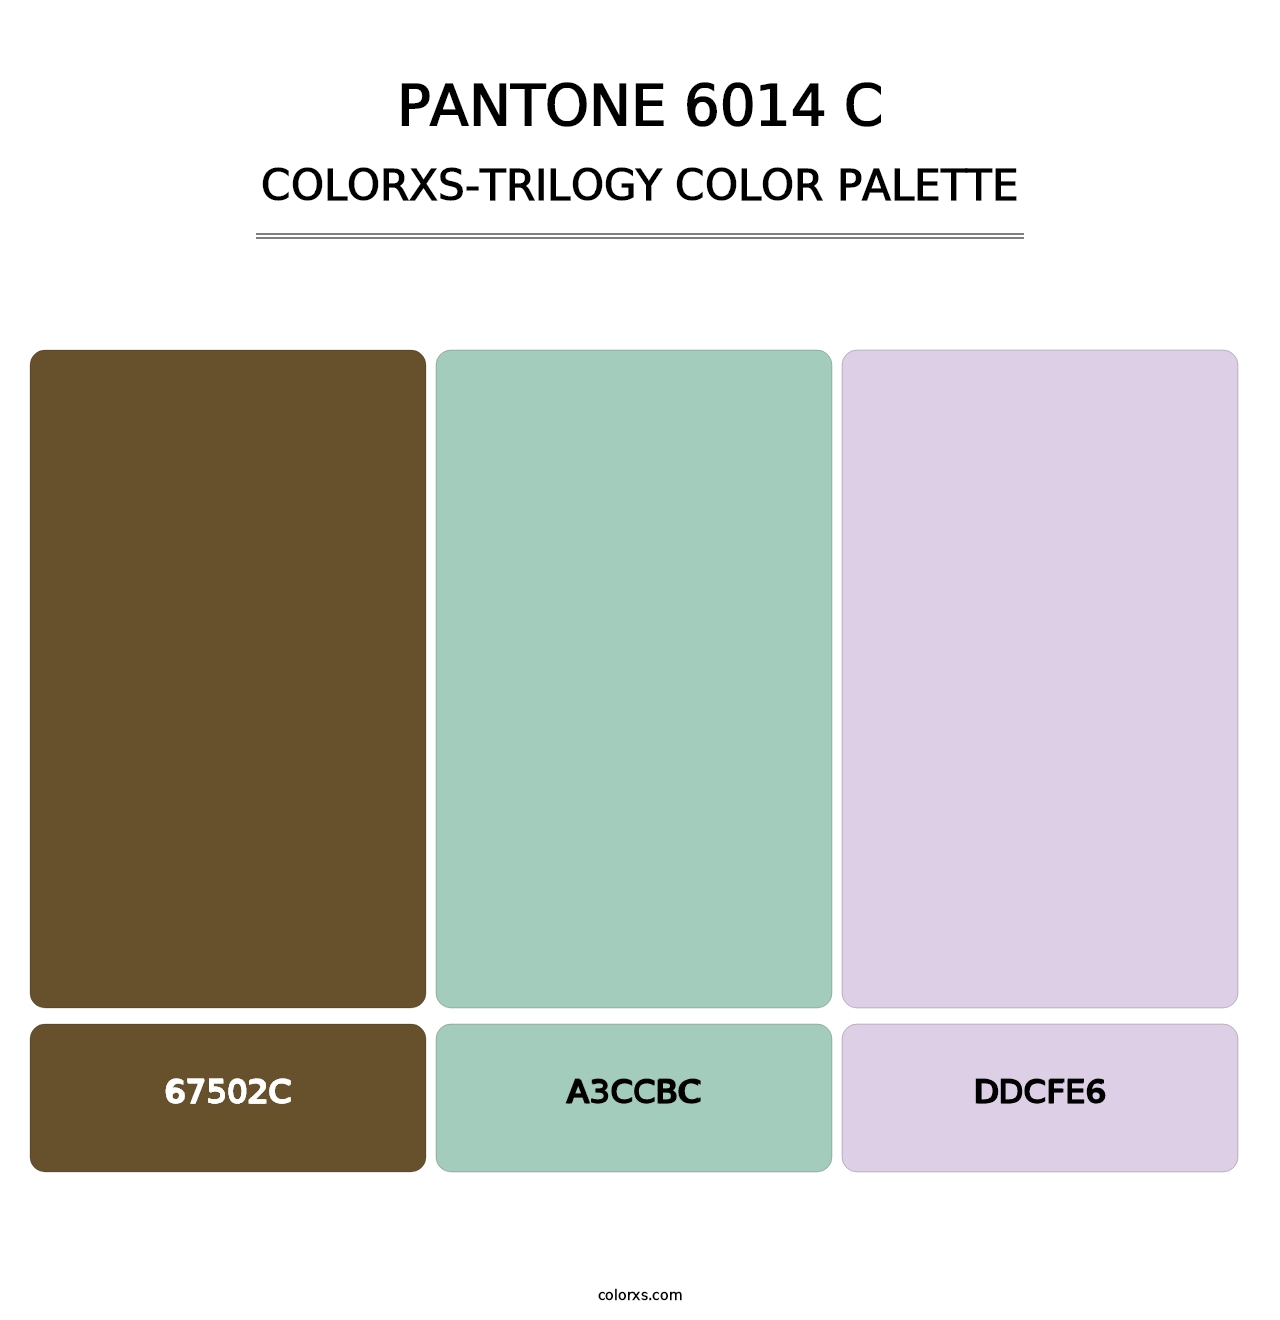 PANTONE 6014 C - Colorxs Trilogy Palette